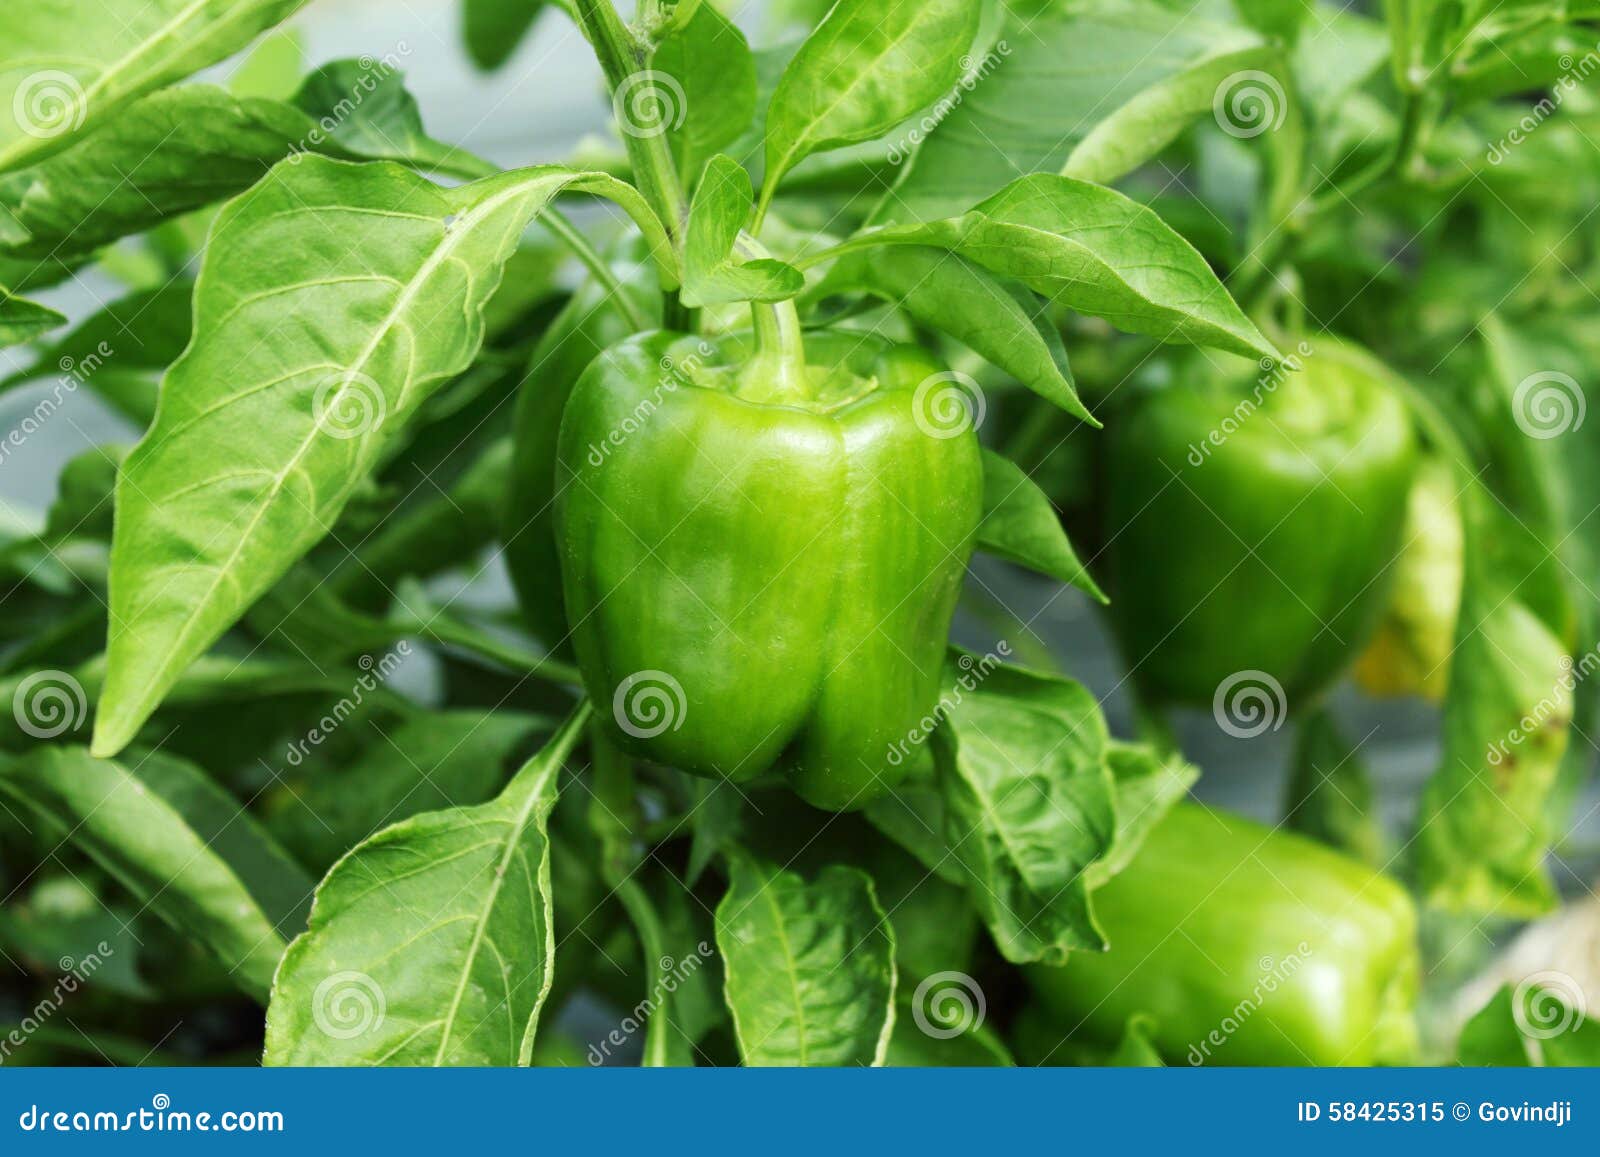 青椒或甜椒在植物库存图片 图片包括有问题的 糖尿病 自然 果子 健康 背包 辣椒 耕种